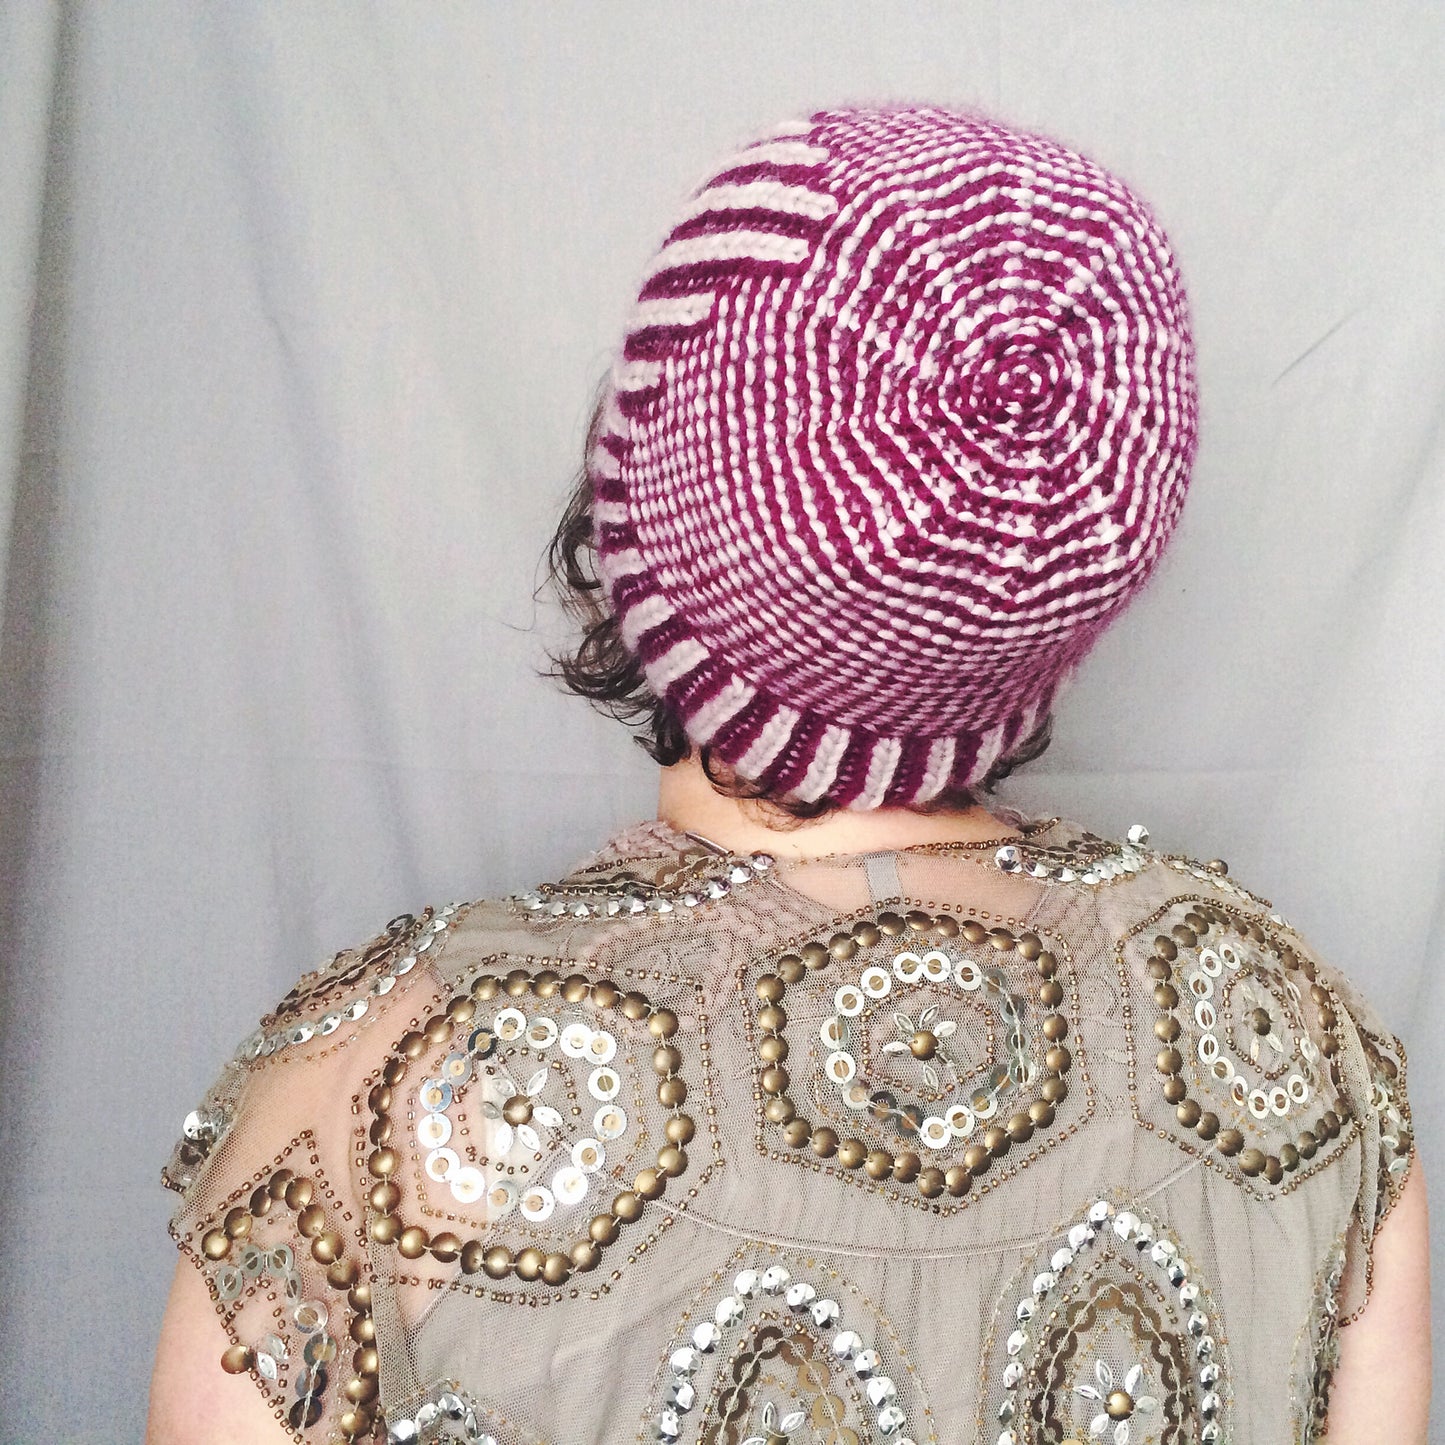 Madness hat knitting pattern from Knit Graffiti Designs